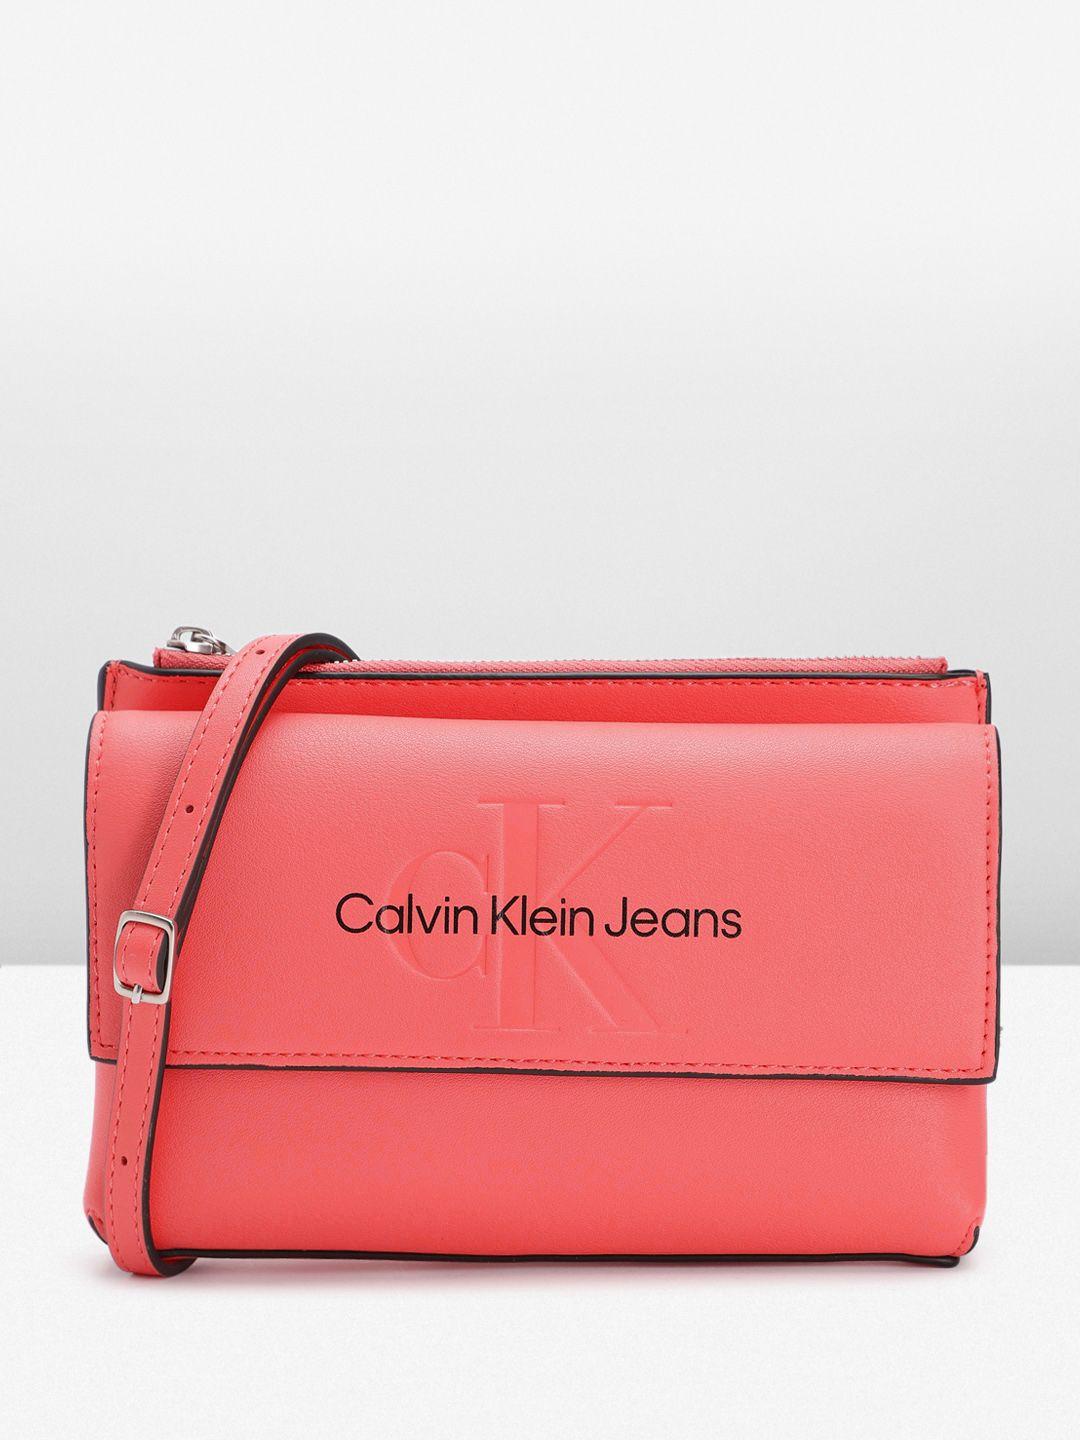 calvin klein women brand logo printed sling bag